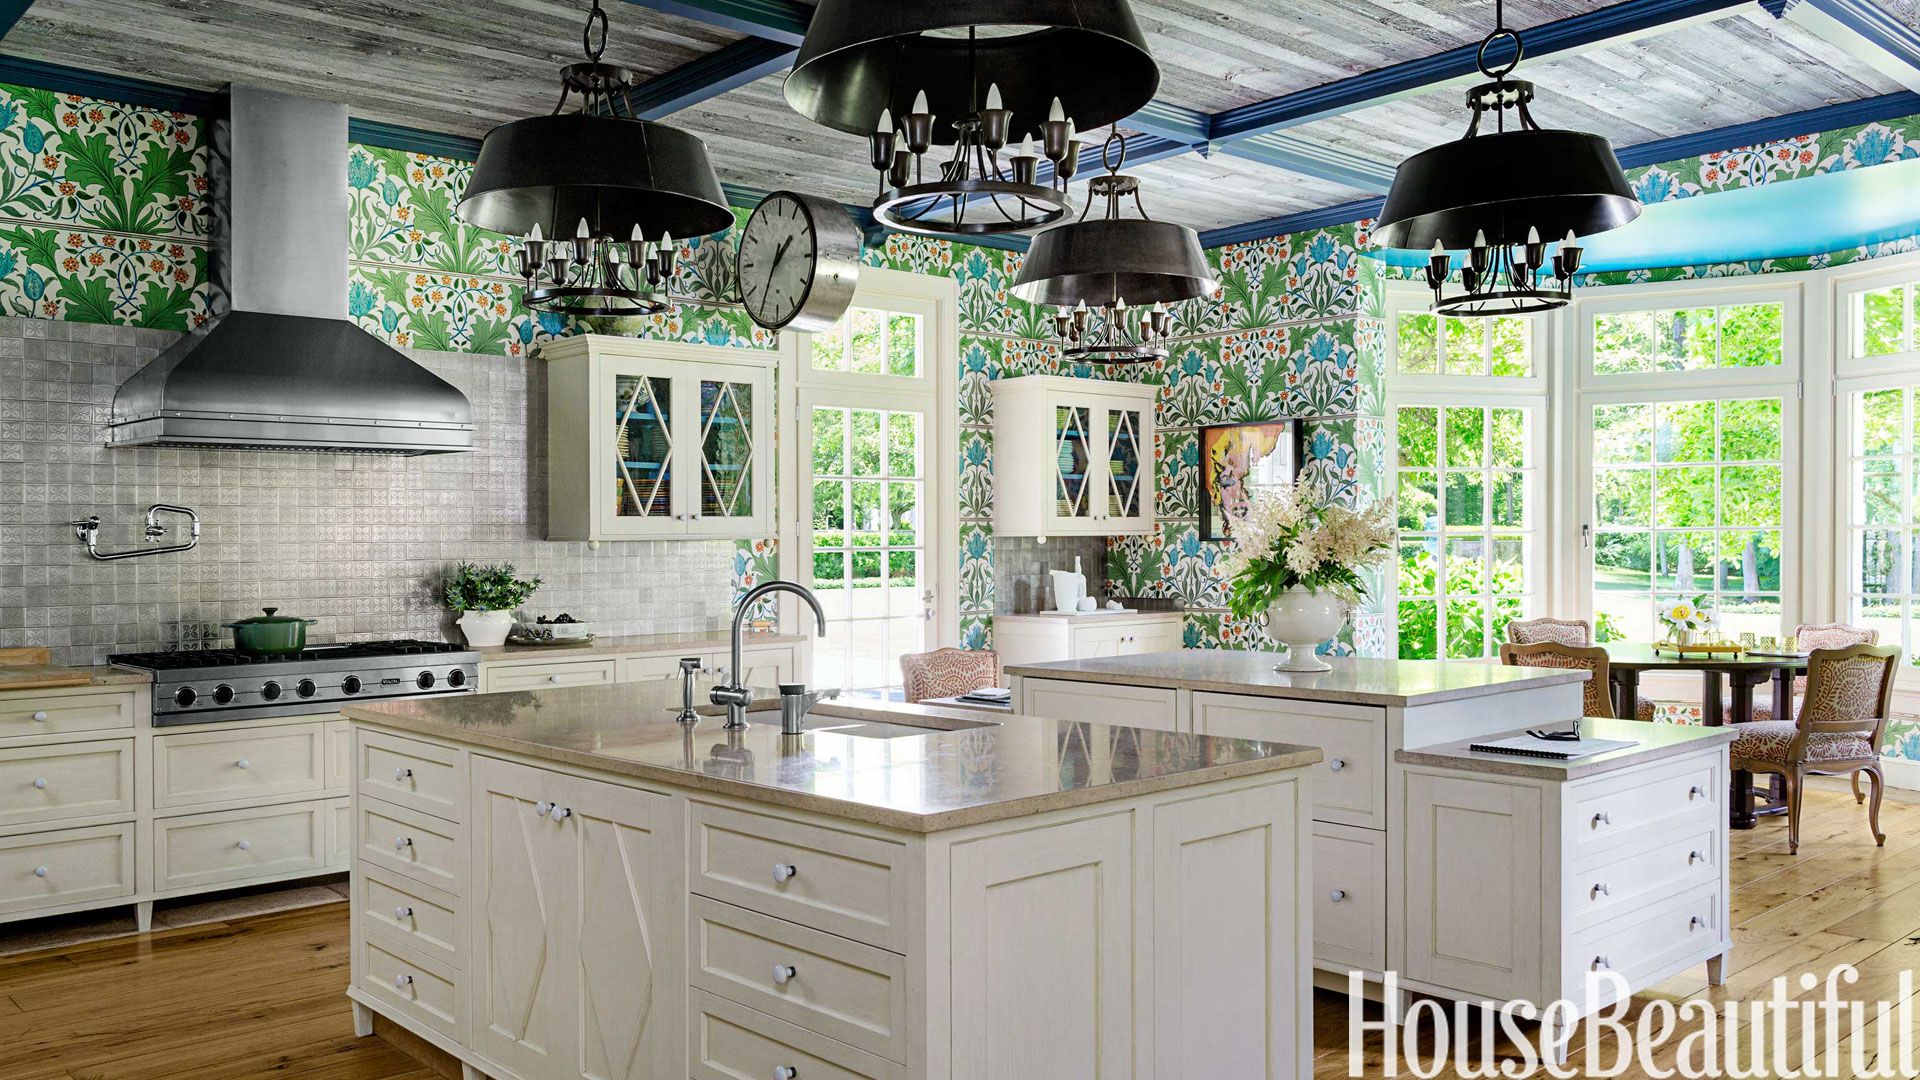 William Morris Wallpaper Kitchen Stephen Sills Kitchen Design